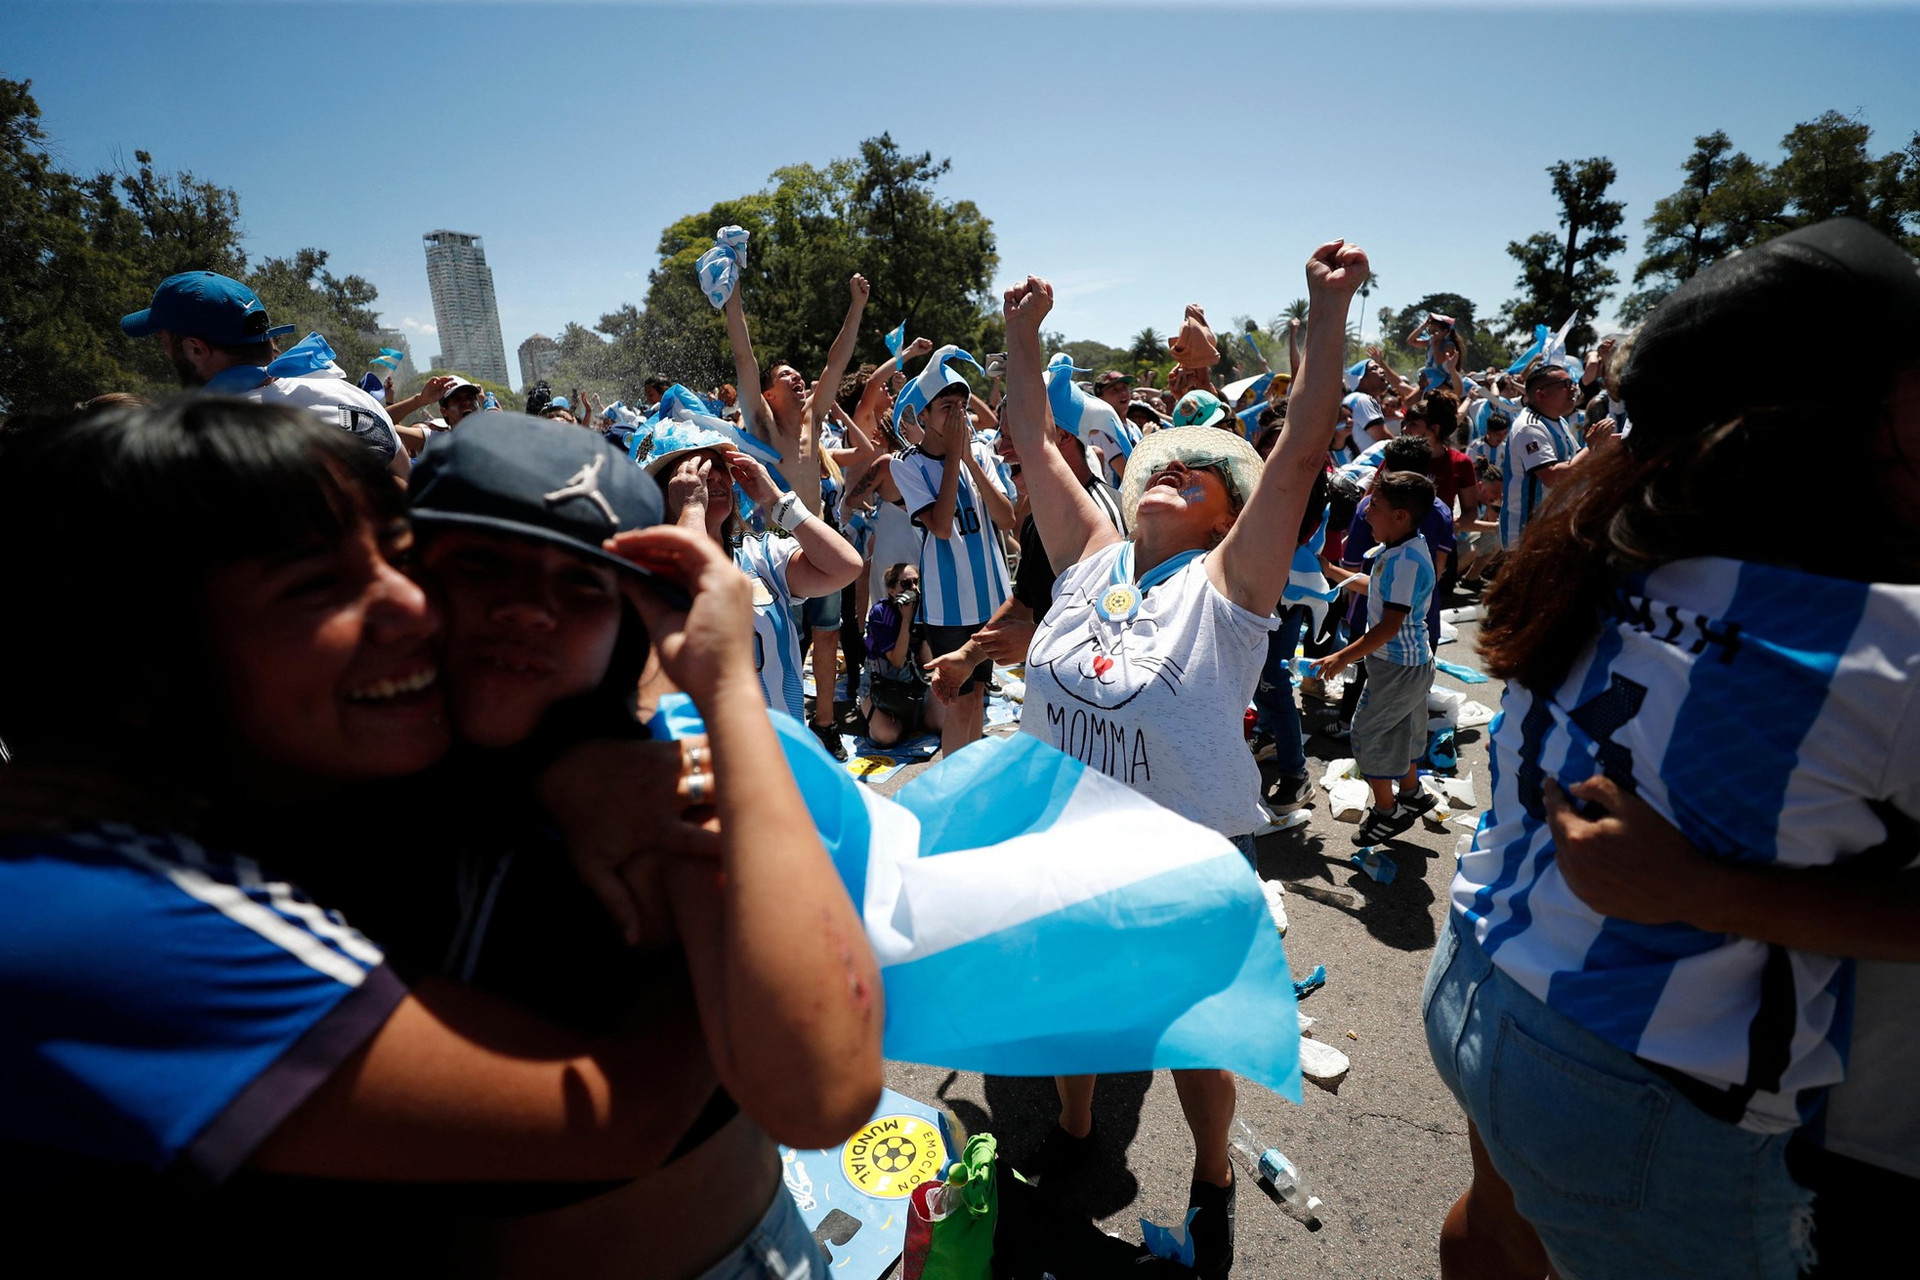 Thủ đô Argentina chìm trong mưa nước mắt vì hạnh phúc ảnh 8